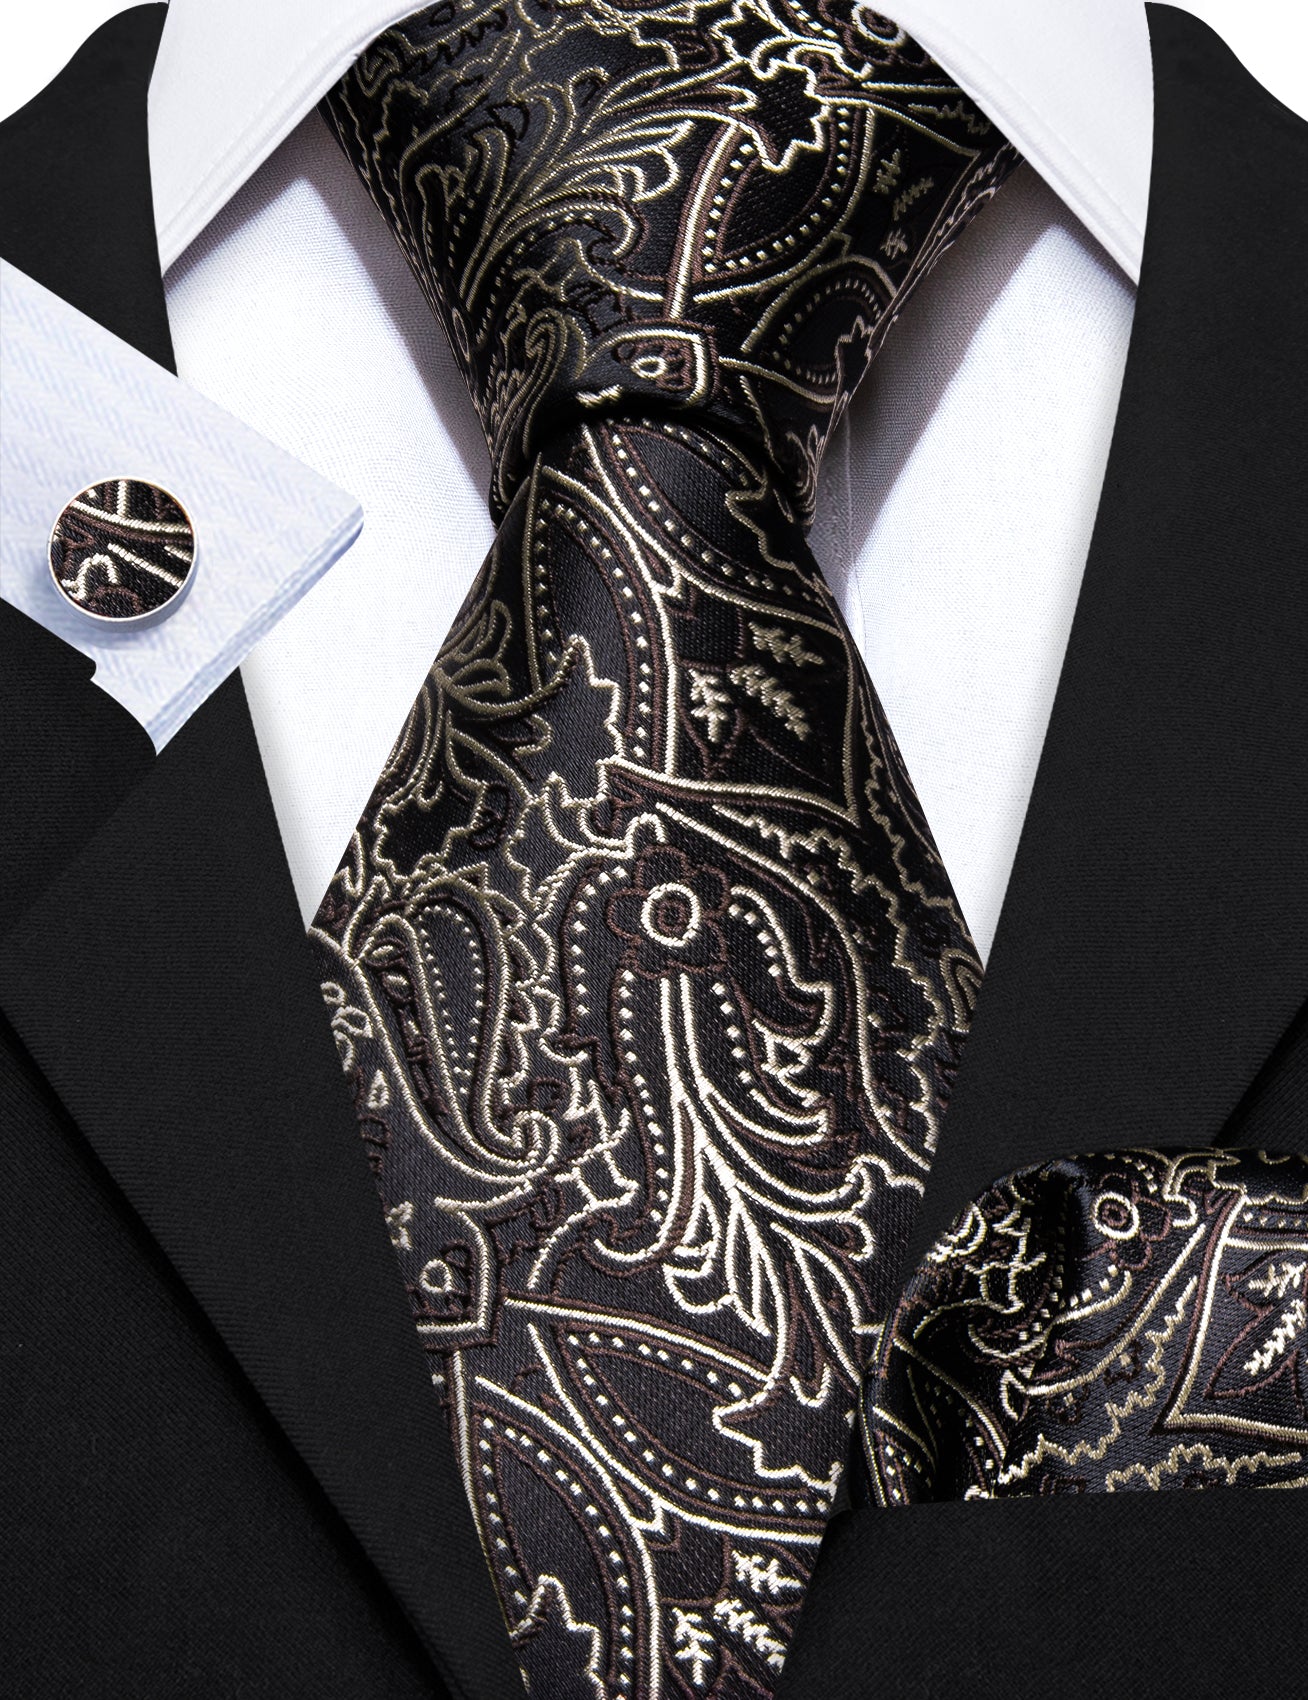 Brown White Floral Silk Tie Handkerchief Cufflinks Set